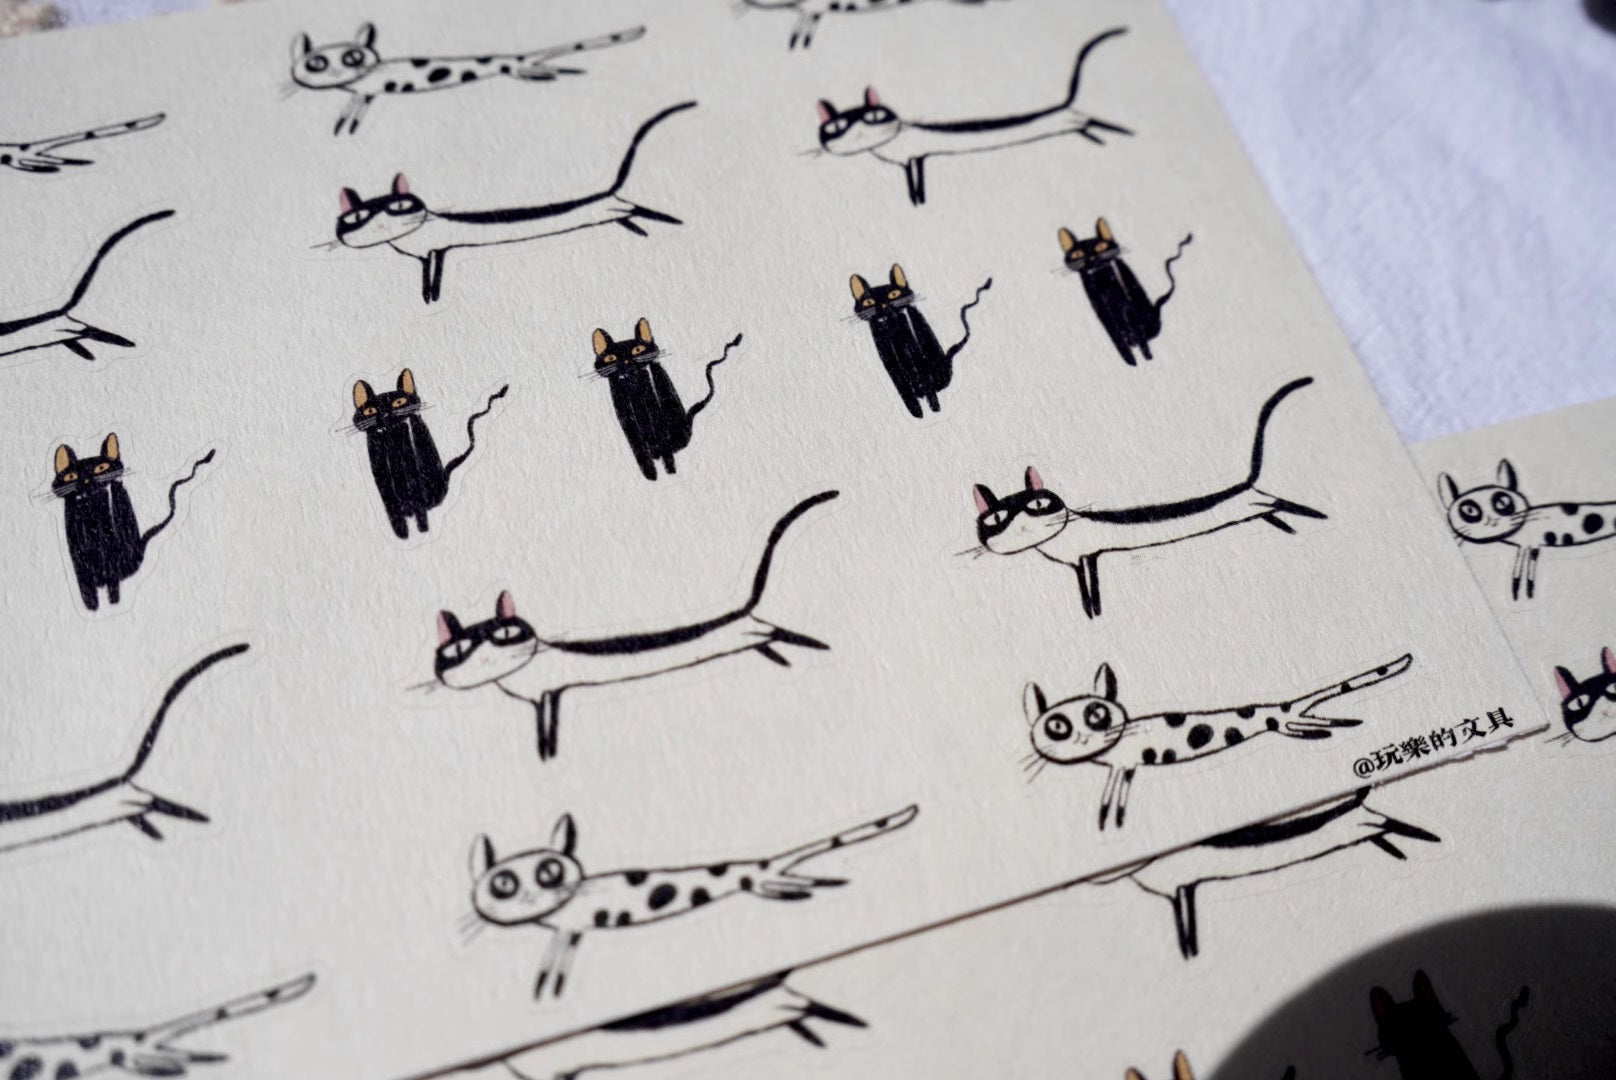 Wanle Studio Sticker Sheet: Black Cats